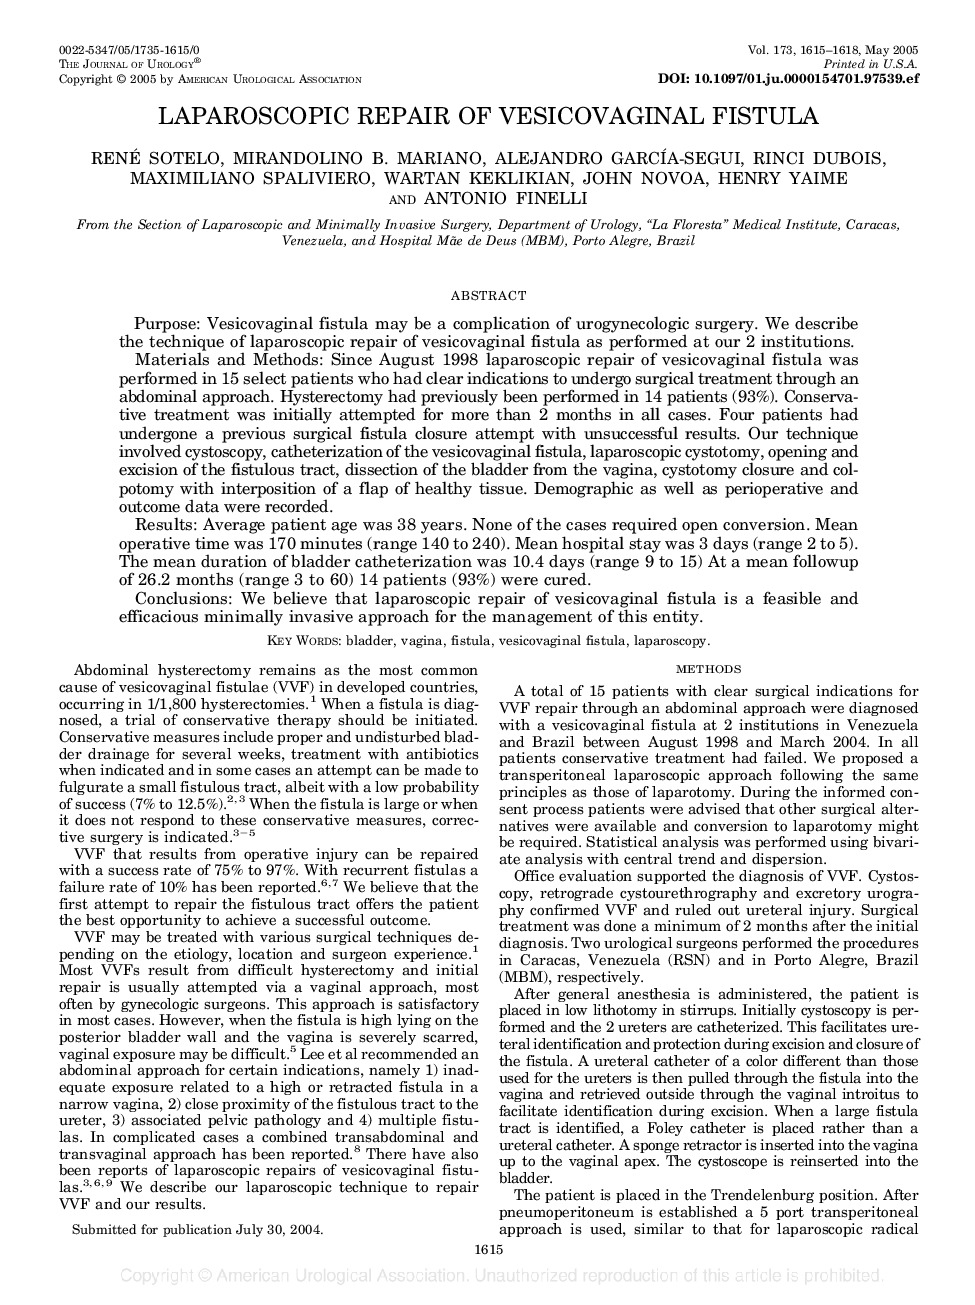 LAPAROSCOPIC REPAIR OF VESICOVAGINAL FISTULA